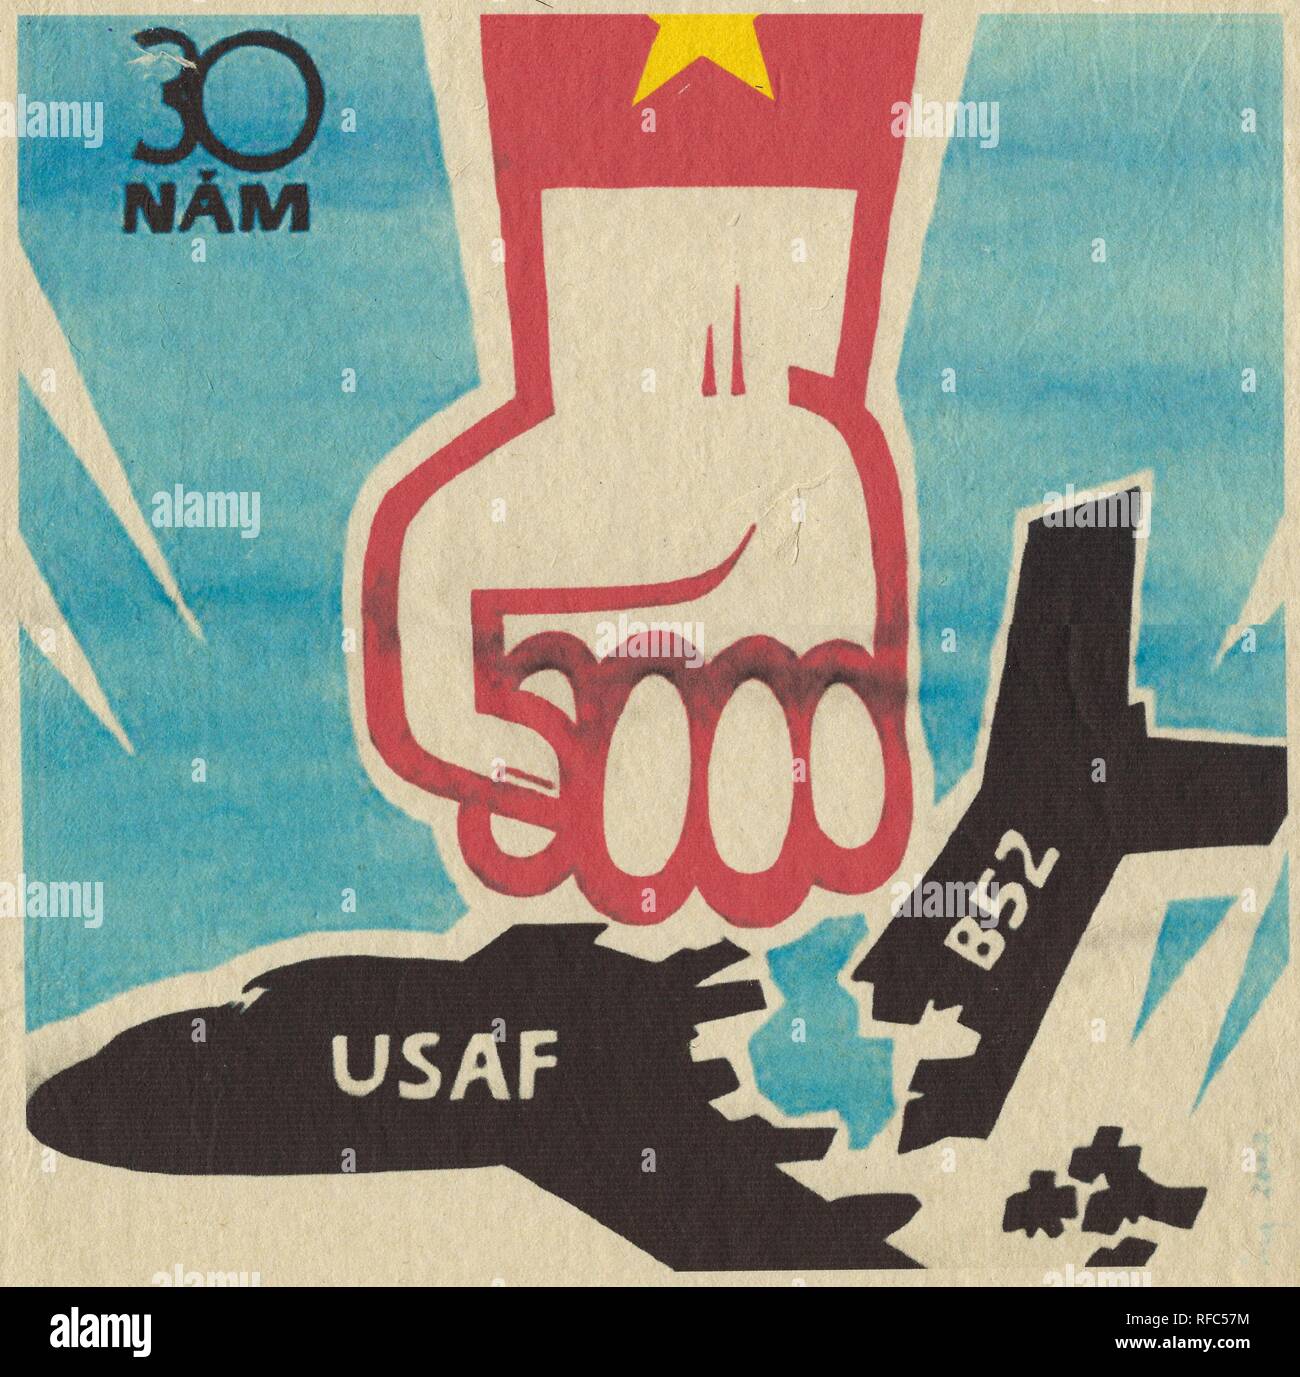 Affiche de propagande vietnamienne du nord, avec un graphique représentant un poing fermé (avec un drapeau vietnamien visible sur le bras) smashing un avion appelée un B52 de l'USAF, avec le texte '30 Nam' dans le coin supérieur gauche, 1965. () Banque D'Images